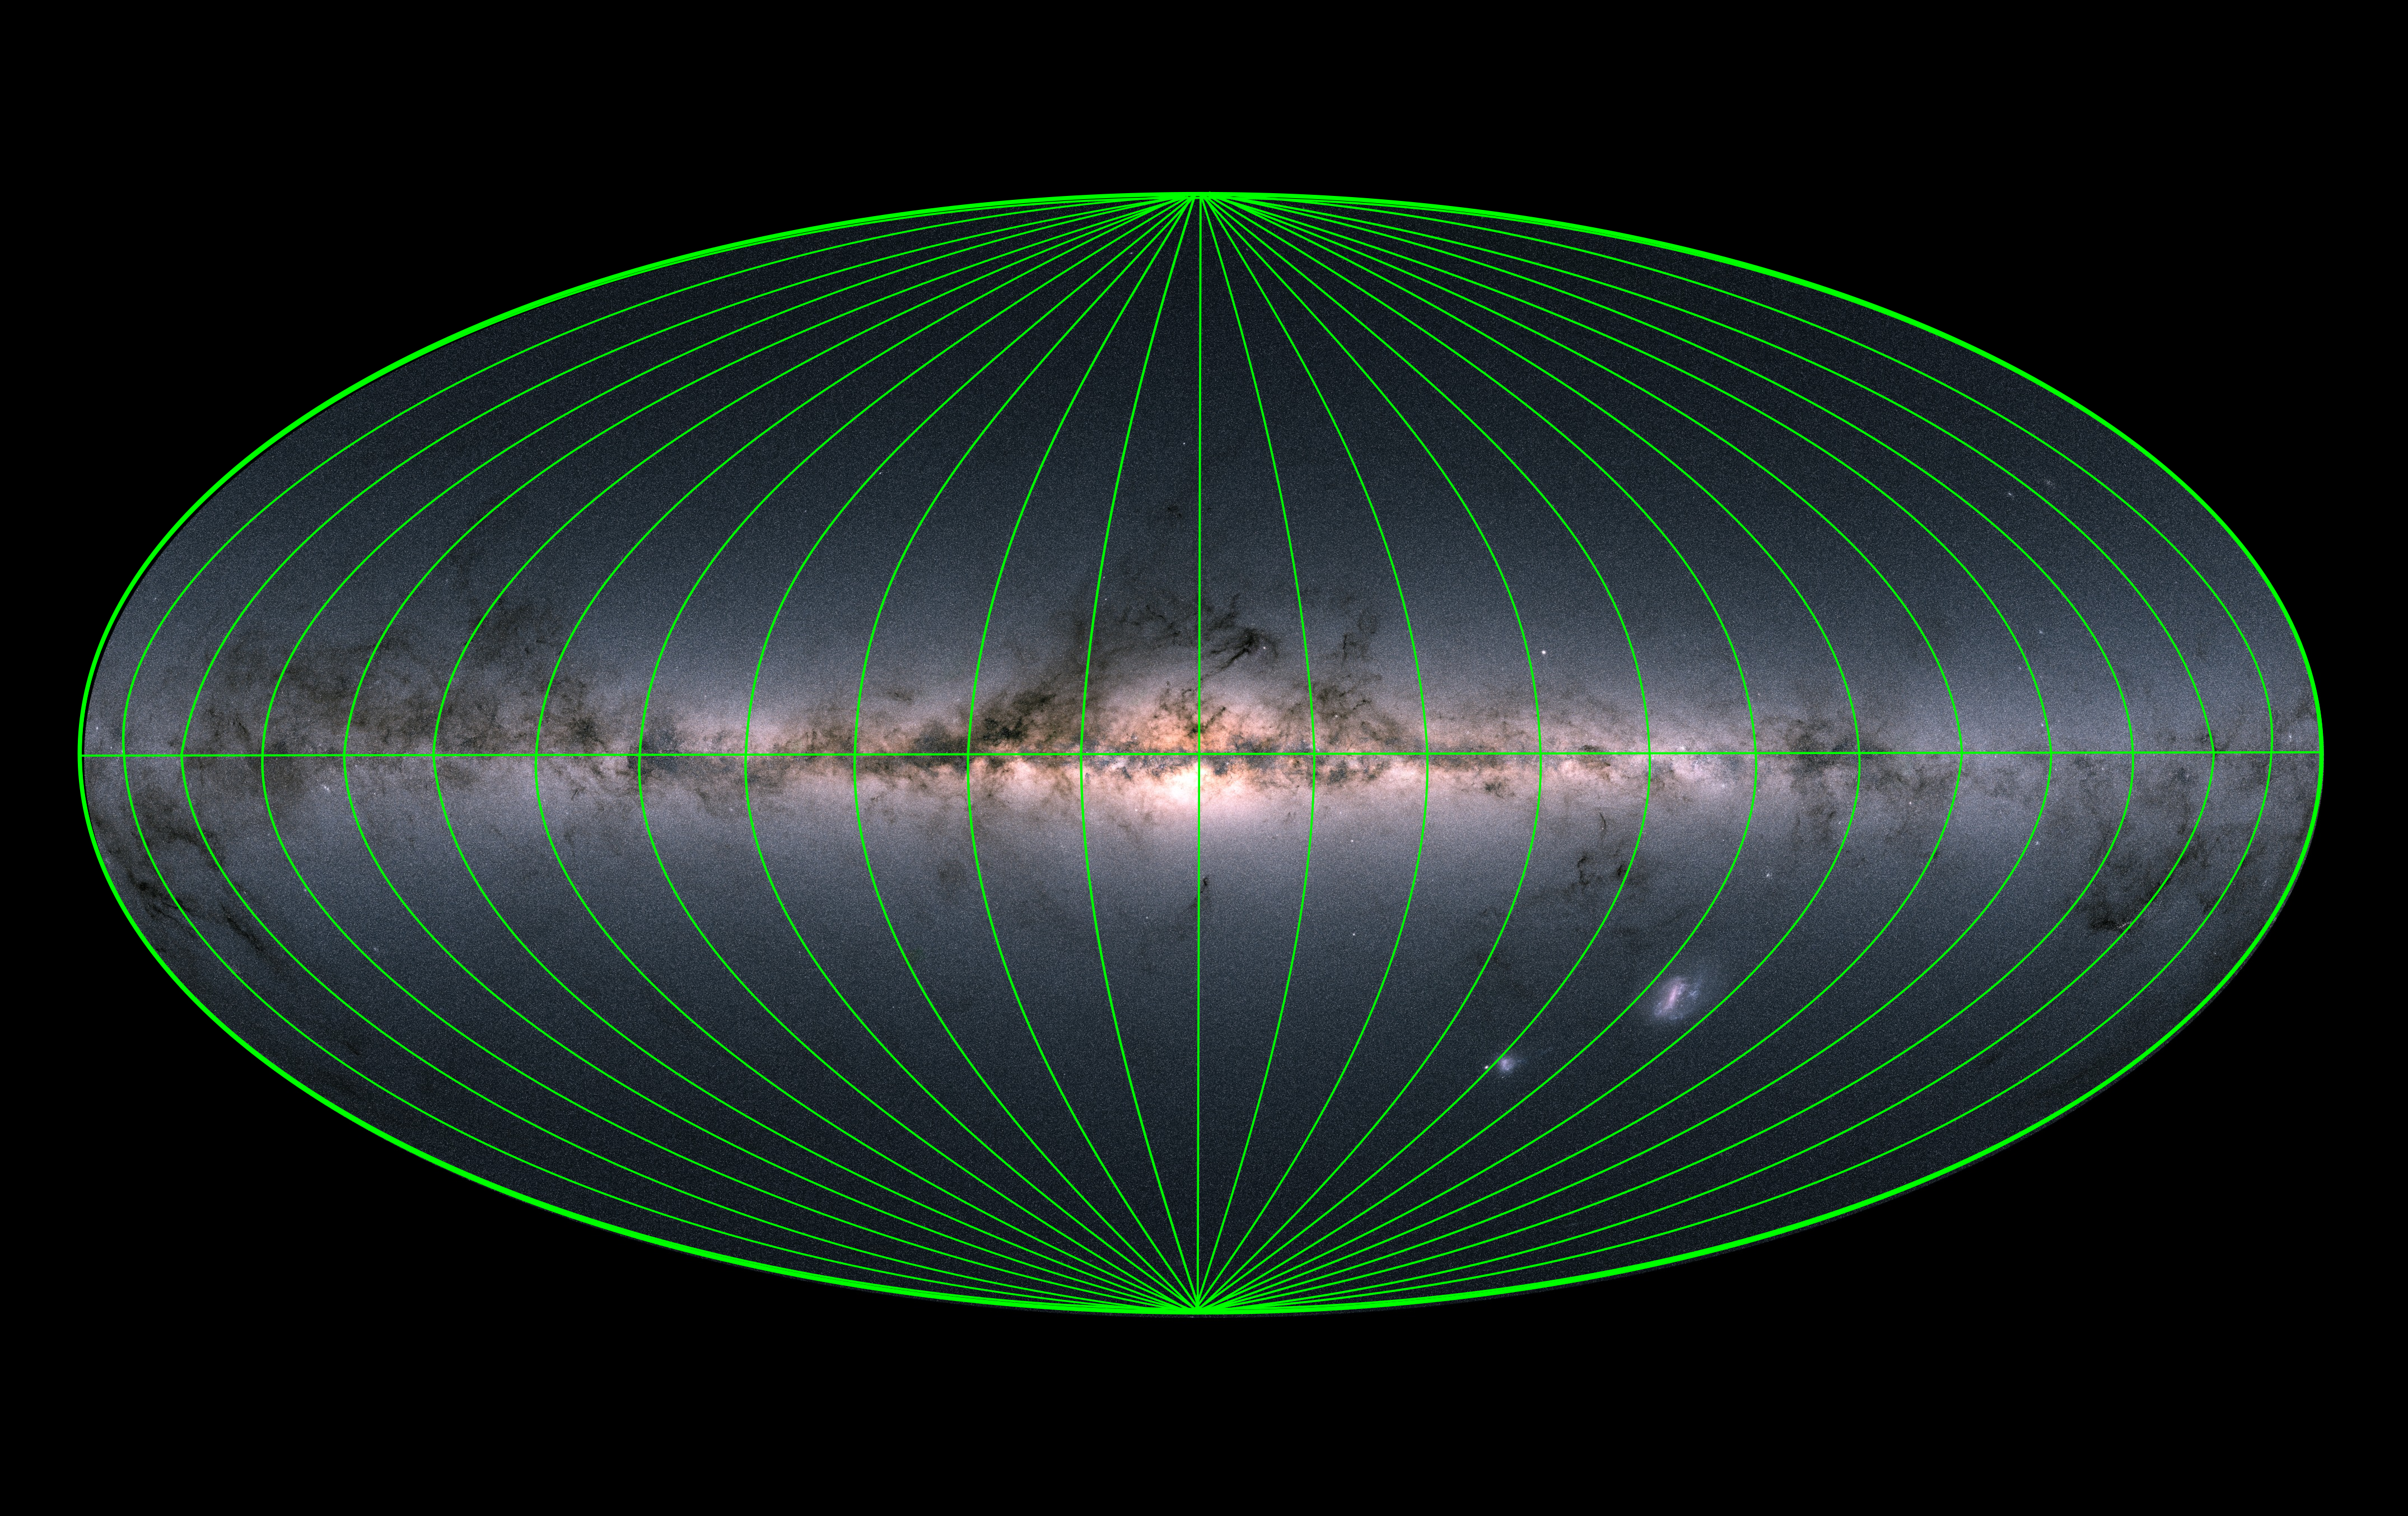 Image credit (for Milky Way underlay): ESA/Gaia/DPAC